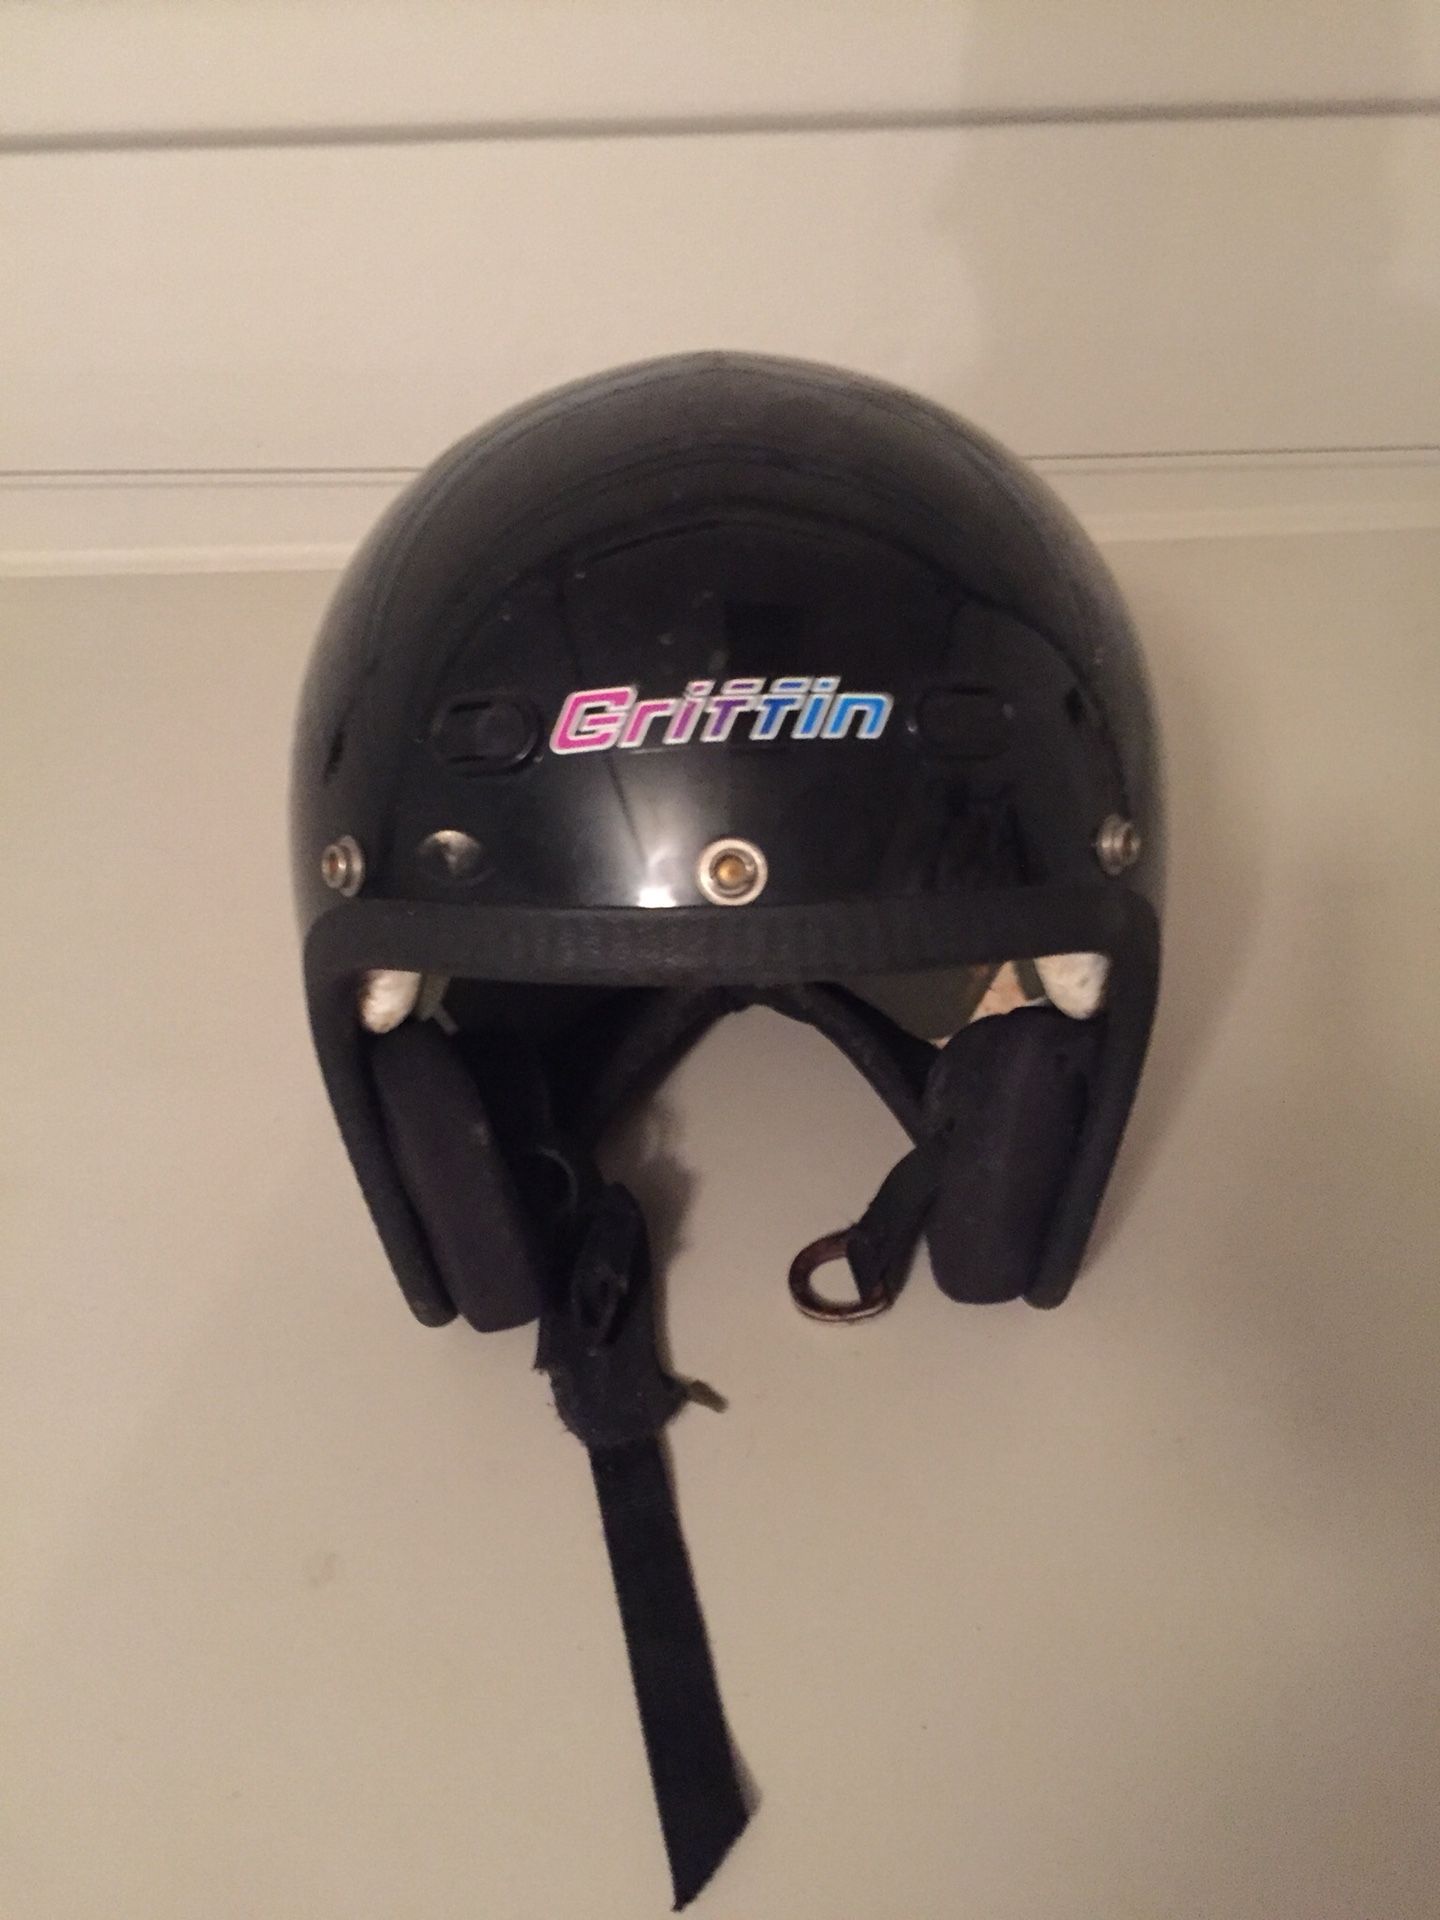 Griffin motorcycle helmet